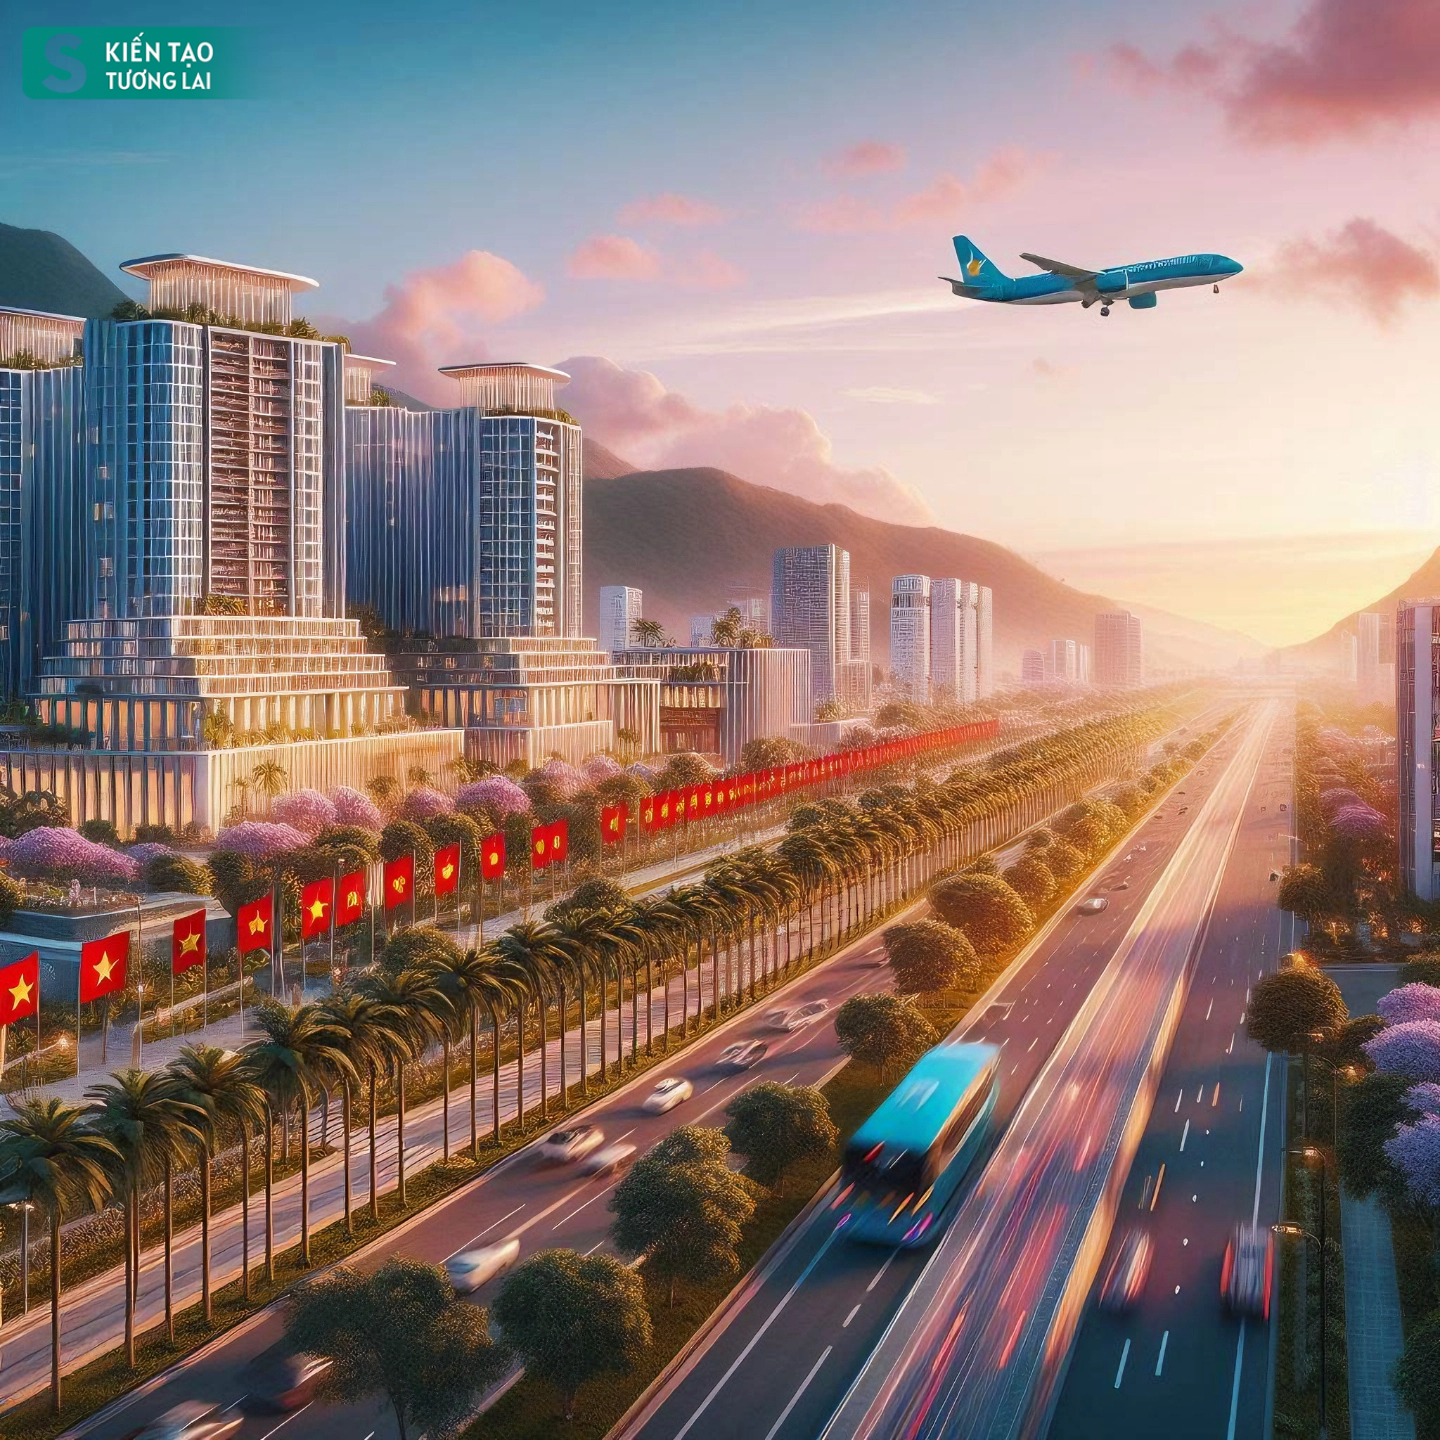 Ngắm tỉnh duy nhất ở Việt Nam giáp Trung Quốc - Lào, có sân bay, tương lai phát triển 'đẳng cấp quốc tế'- Ảnh 1.